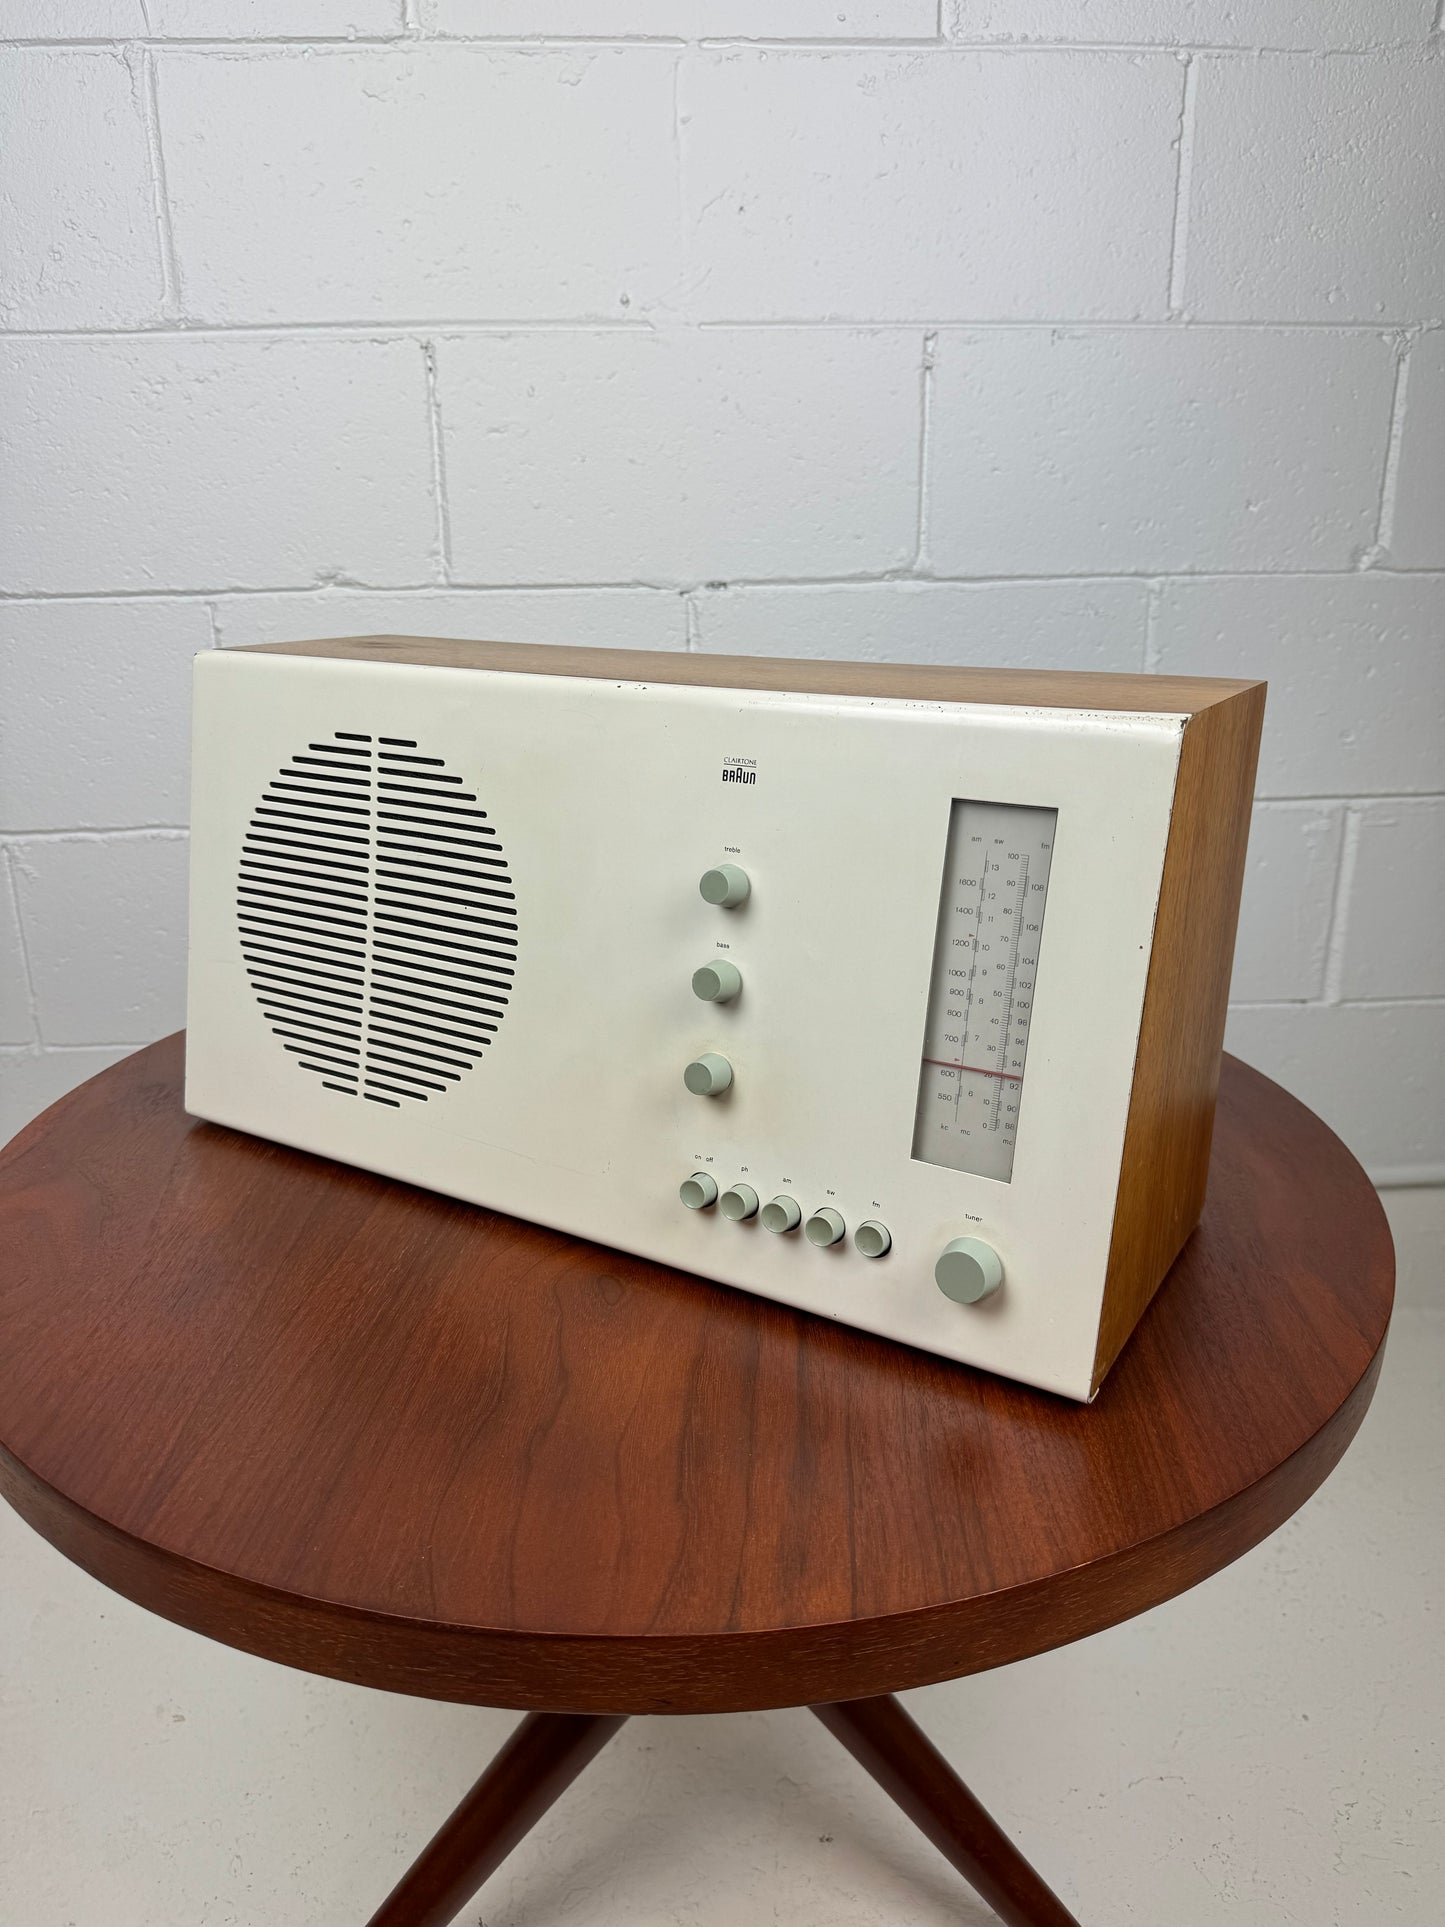 Vintage Braun Clairtone RT 20C Radio